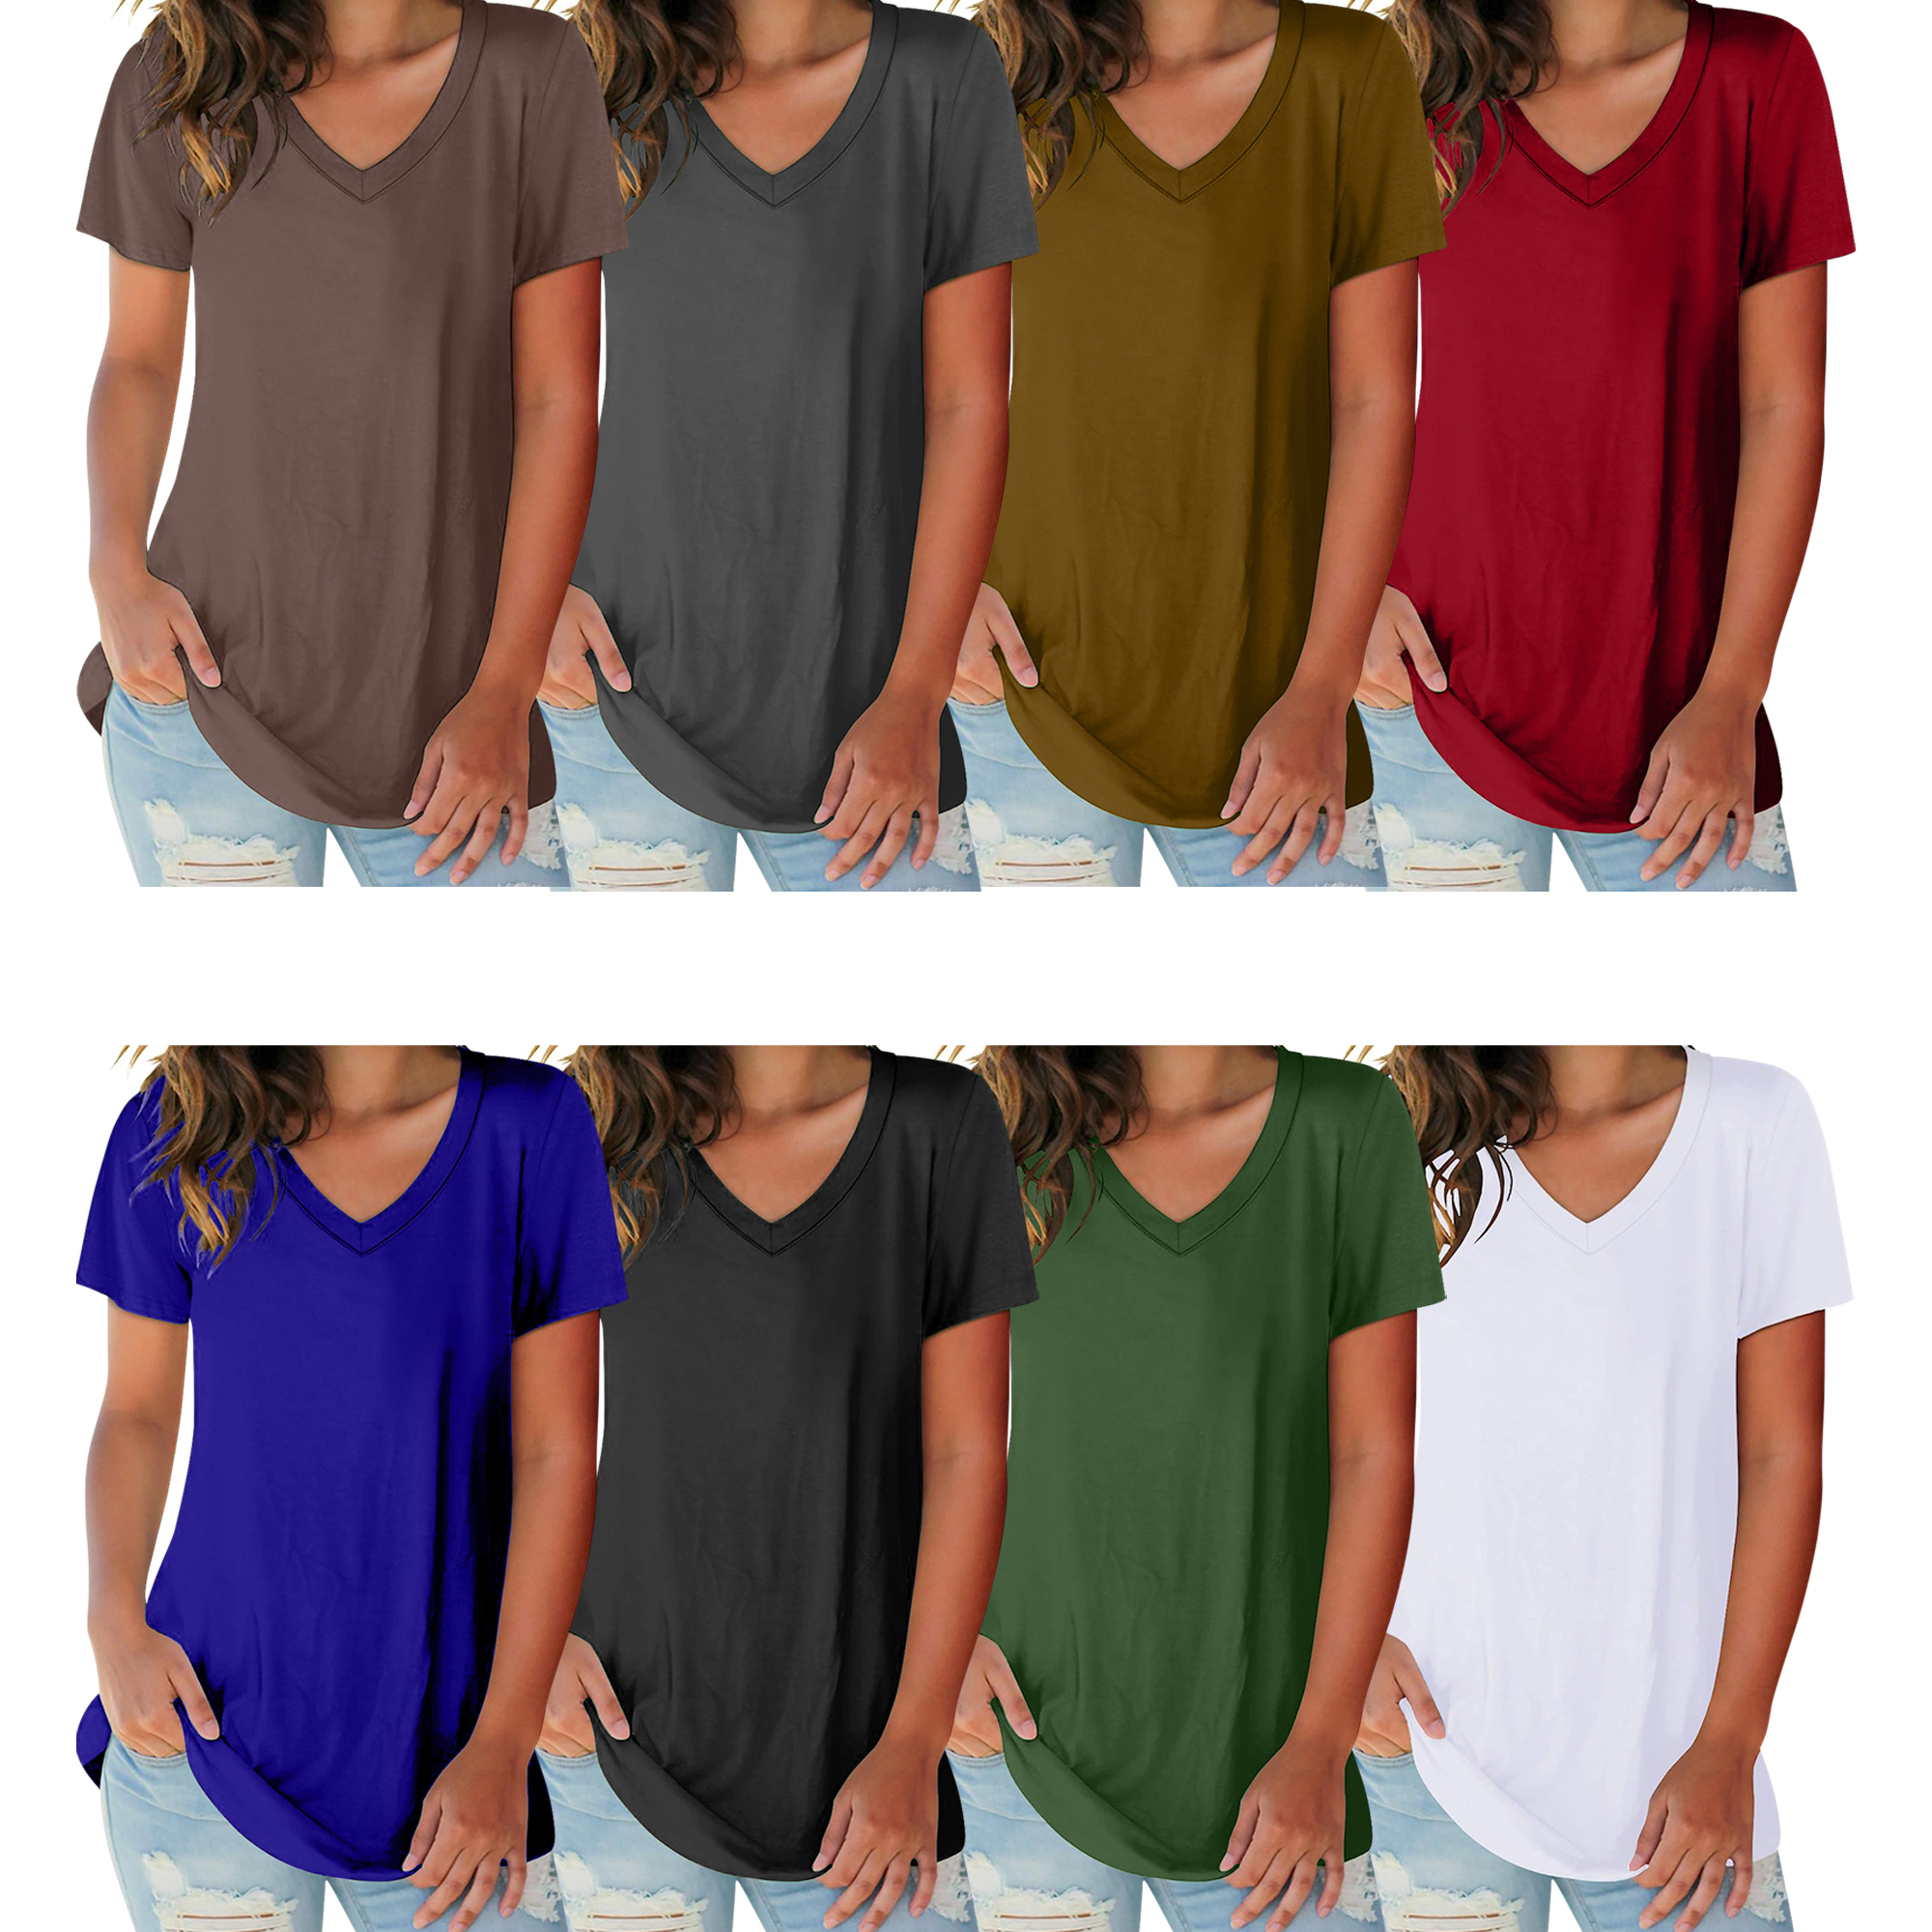 5-Pack: Ladies Ultra Soft Cotton Basic Short Sleeve V-Neck Short Sleeve Summer T-Shirts - XX-Large